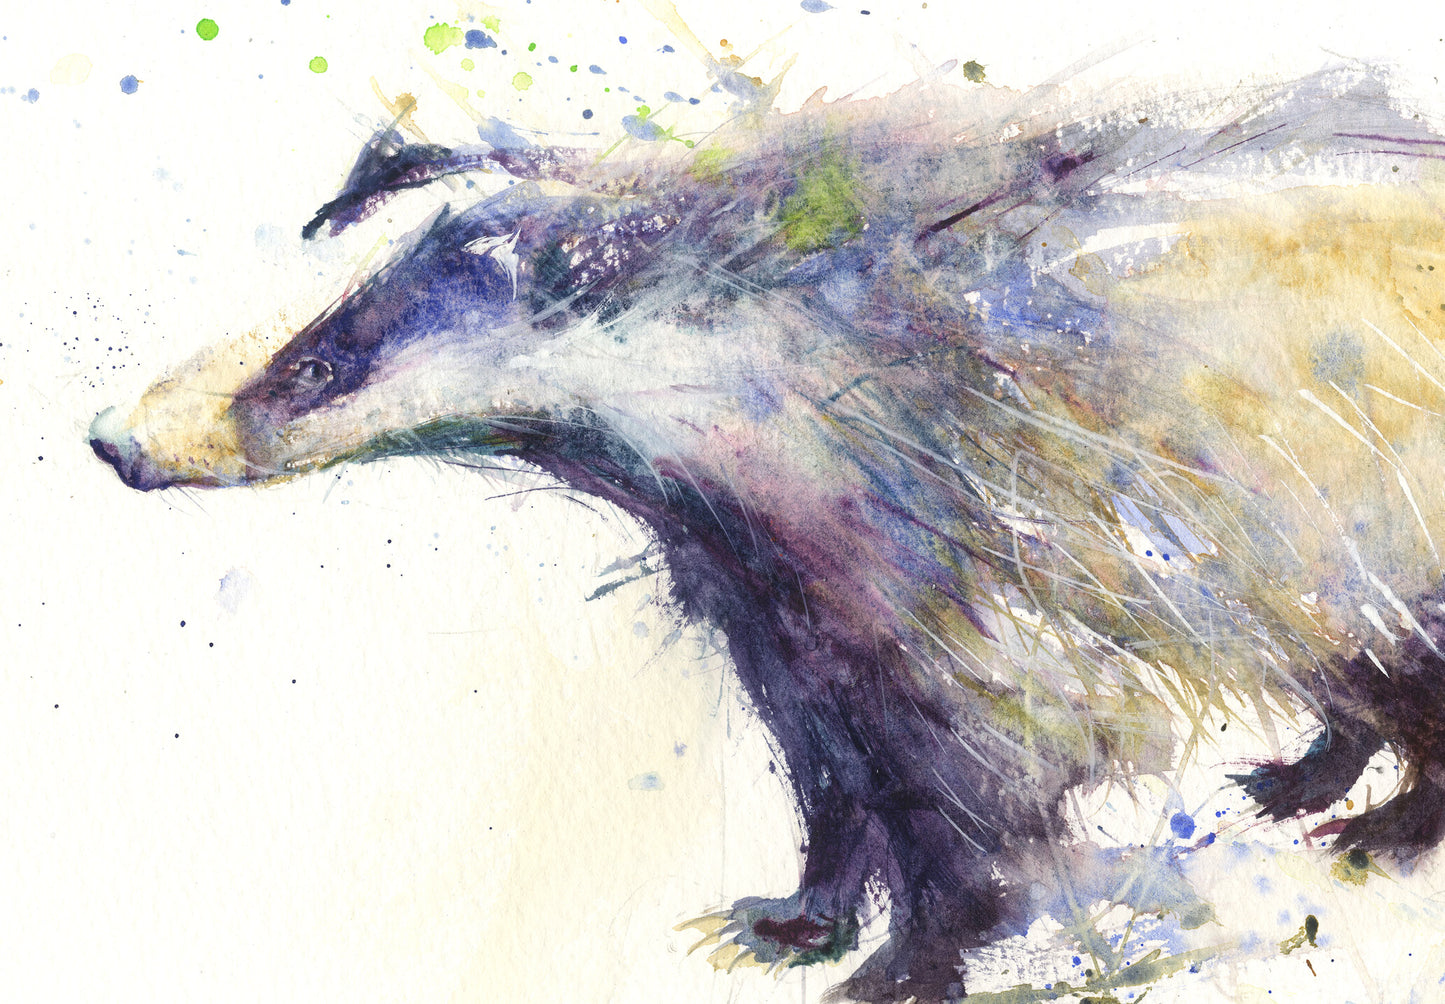 Signed limited edition print - Badger - Jen Buckley Art limited edition animal art prints